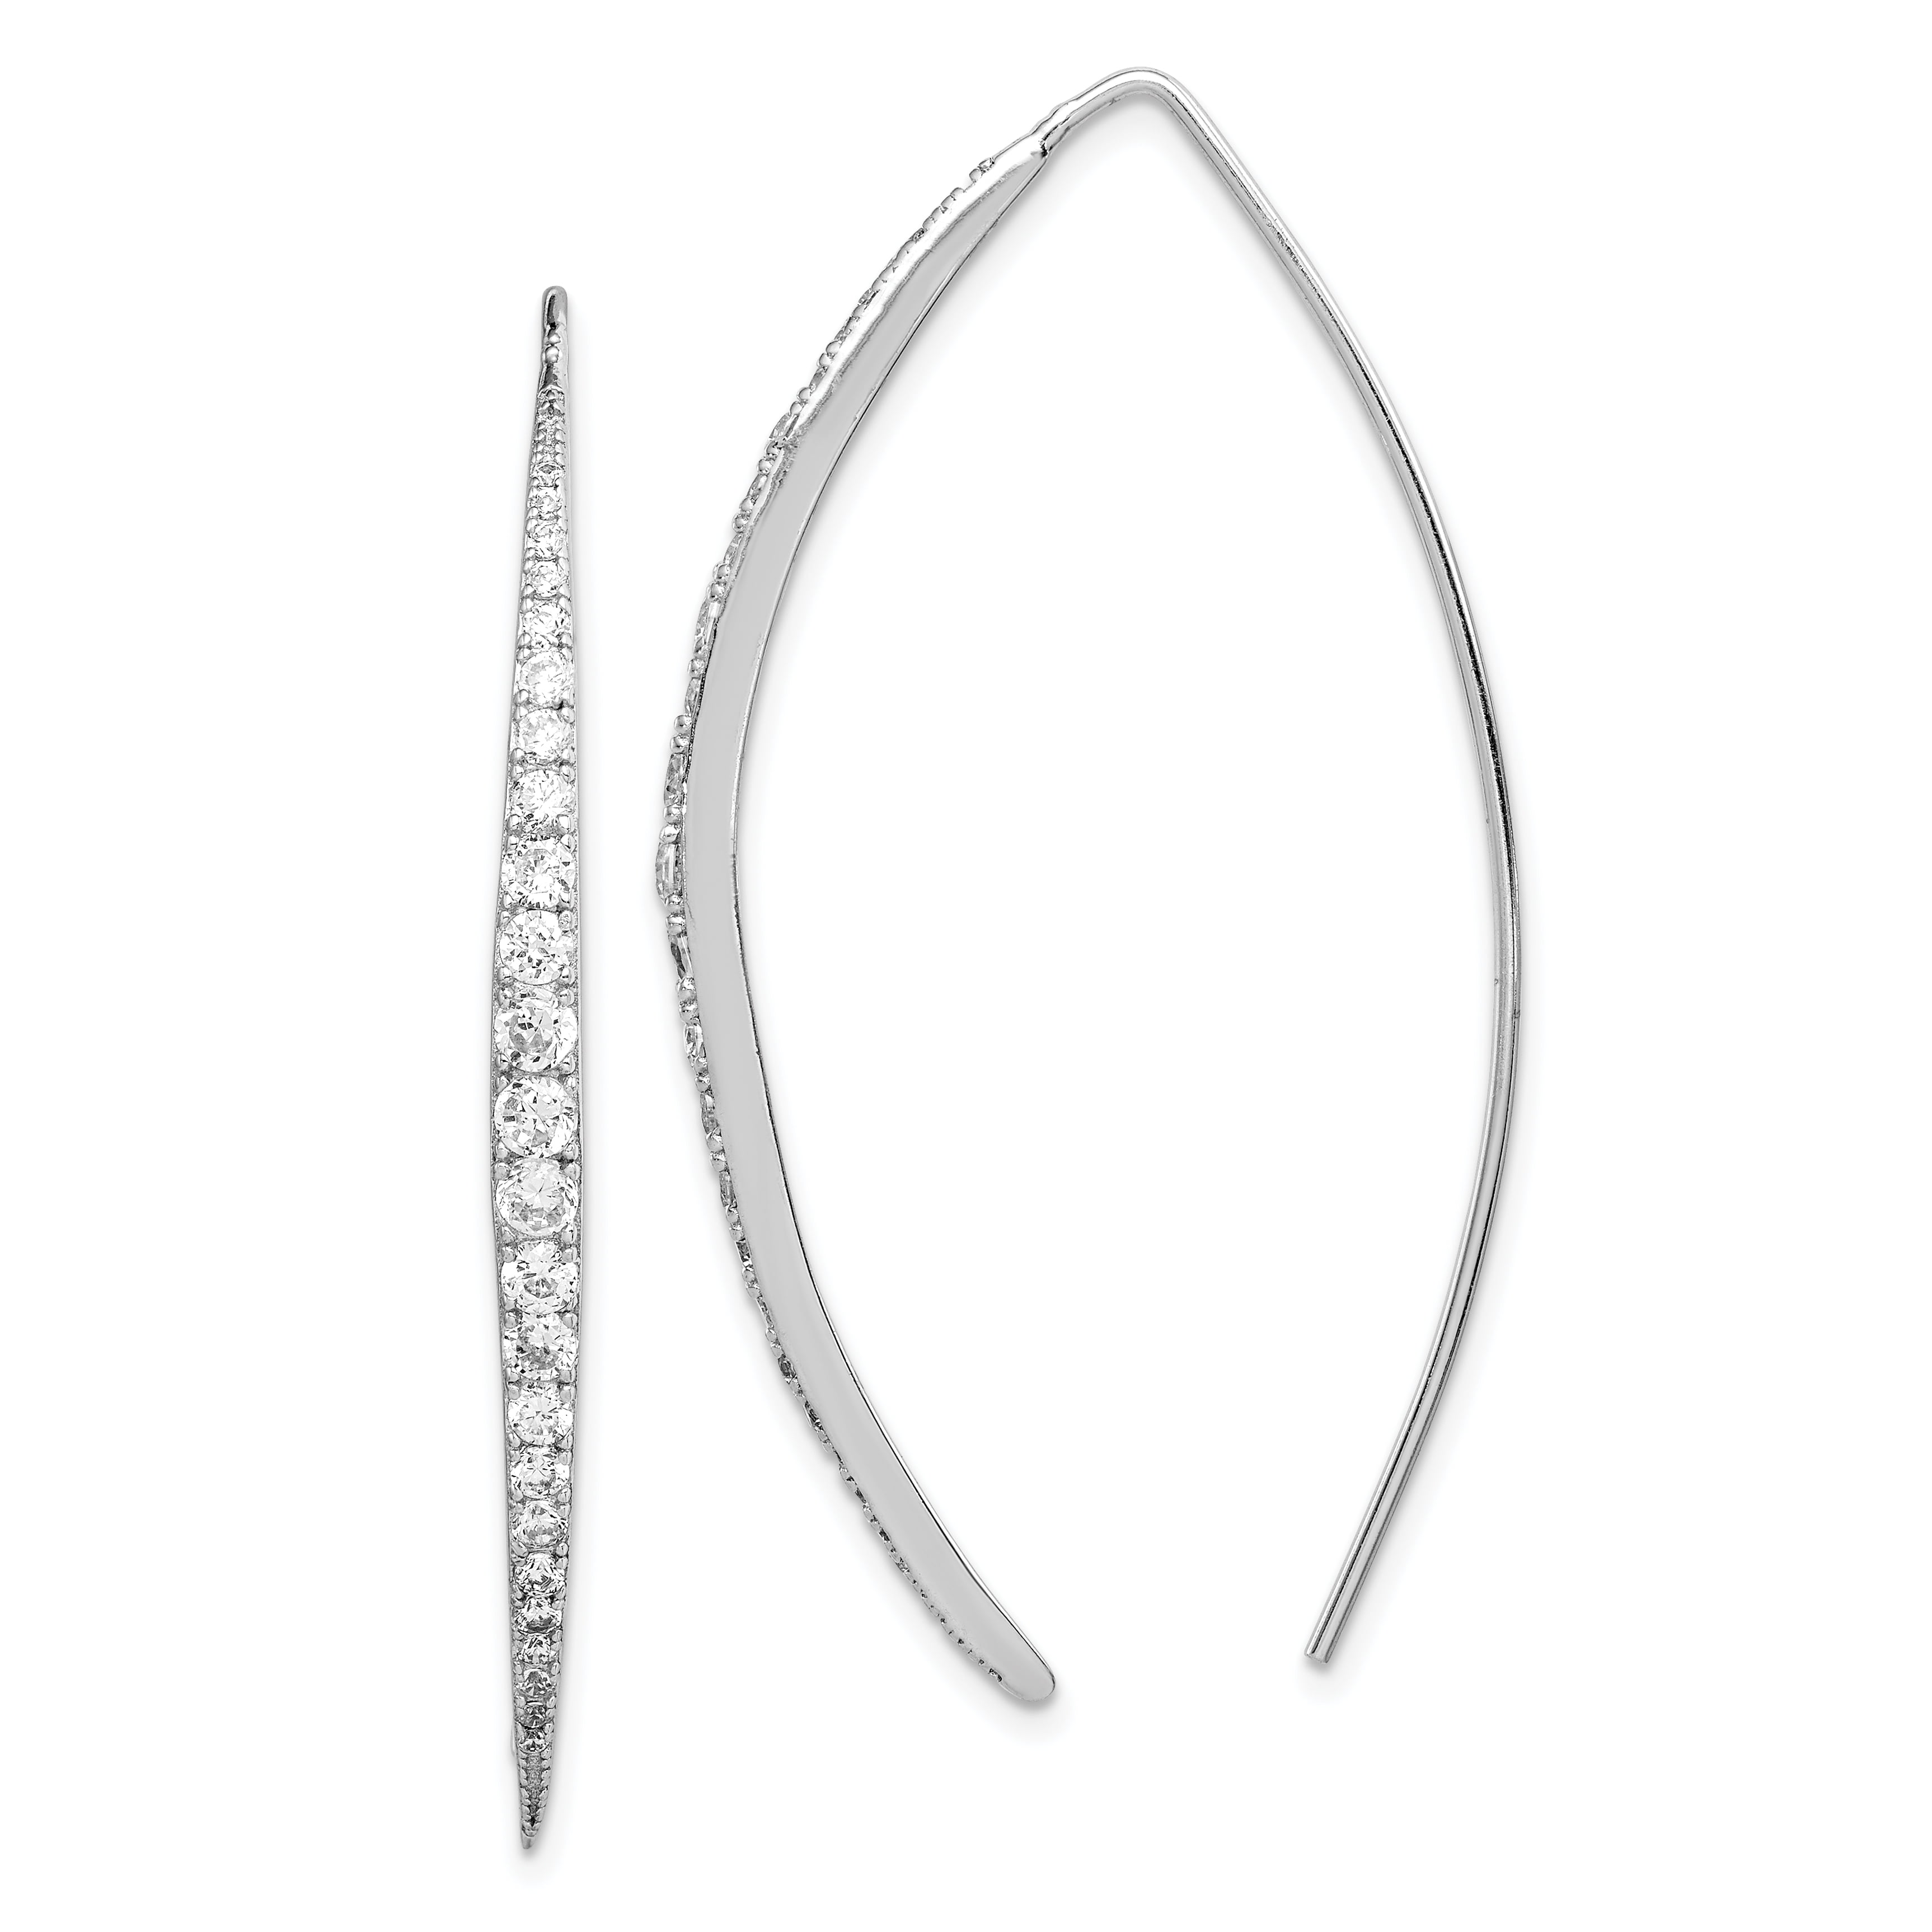 Clear Cubic Zirconia Halfway Design Hoop Earrings Rhodium Plated Sterling Silver